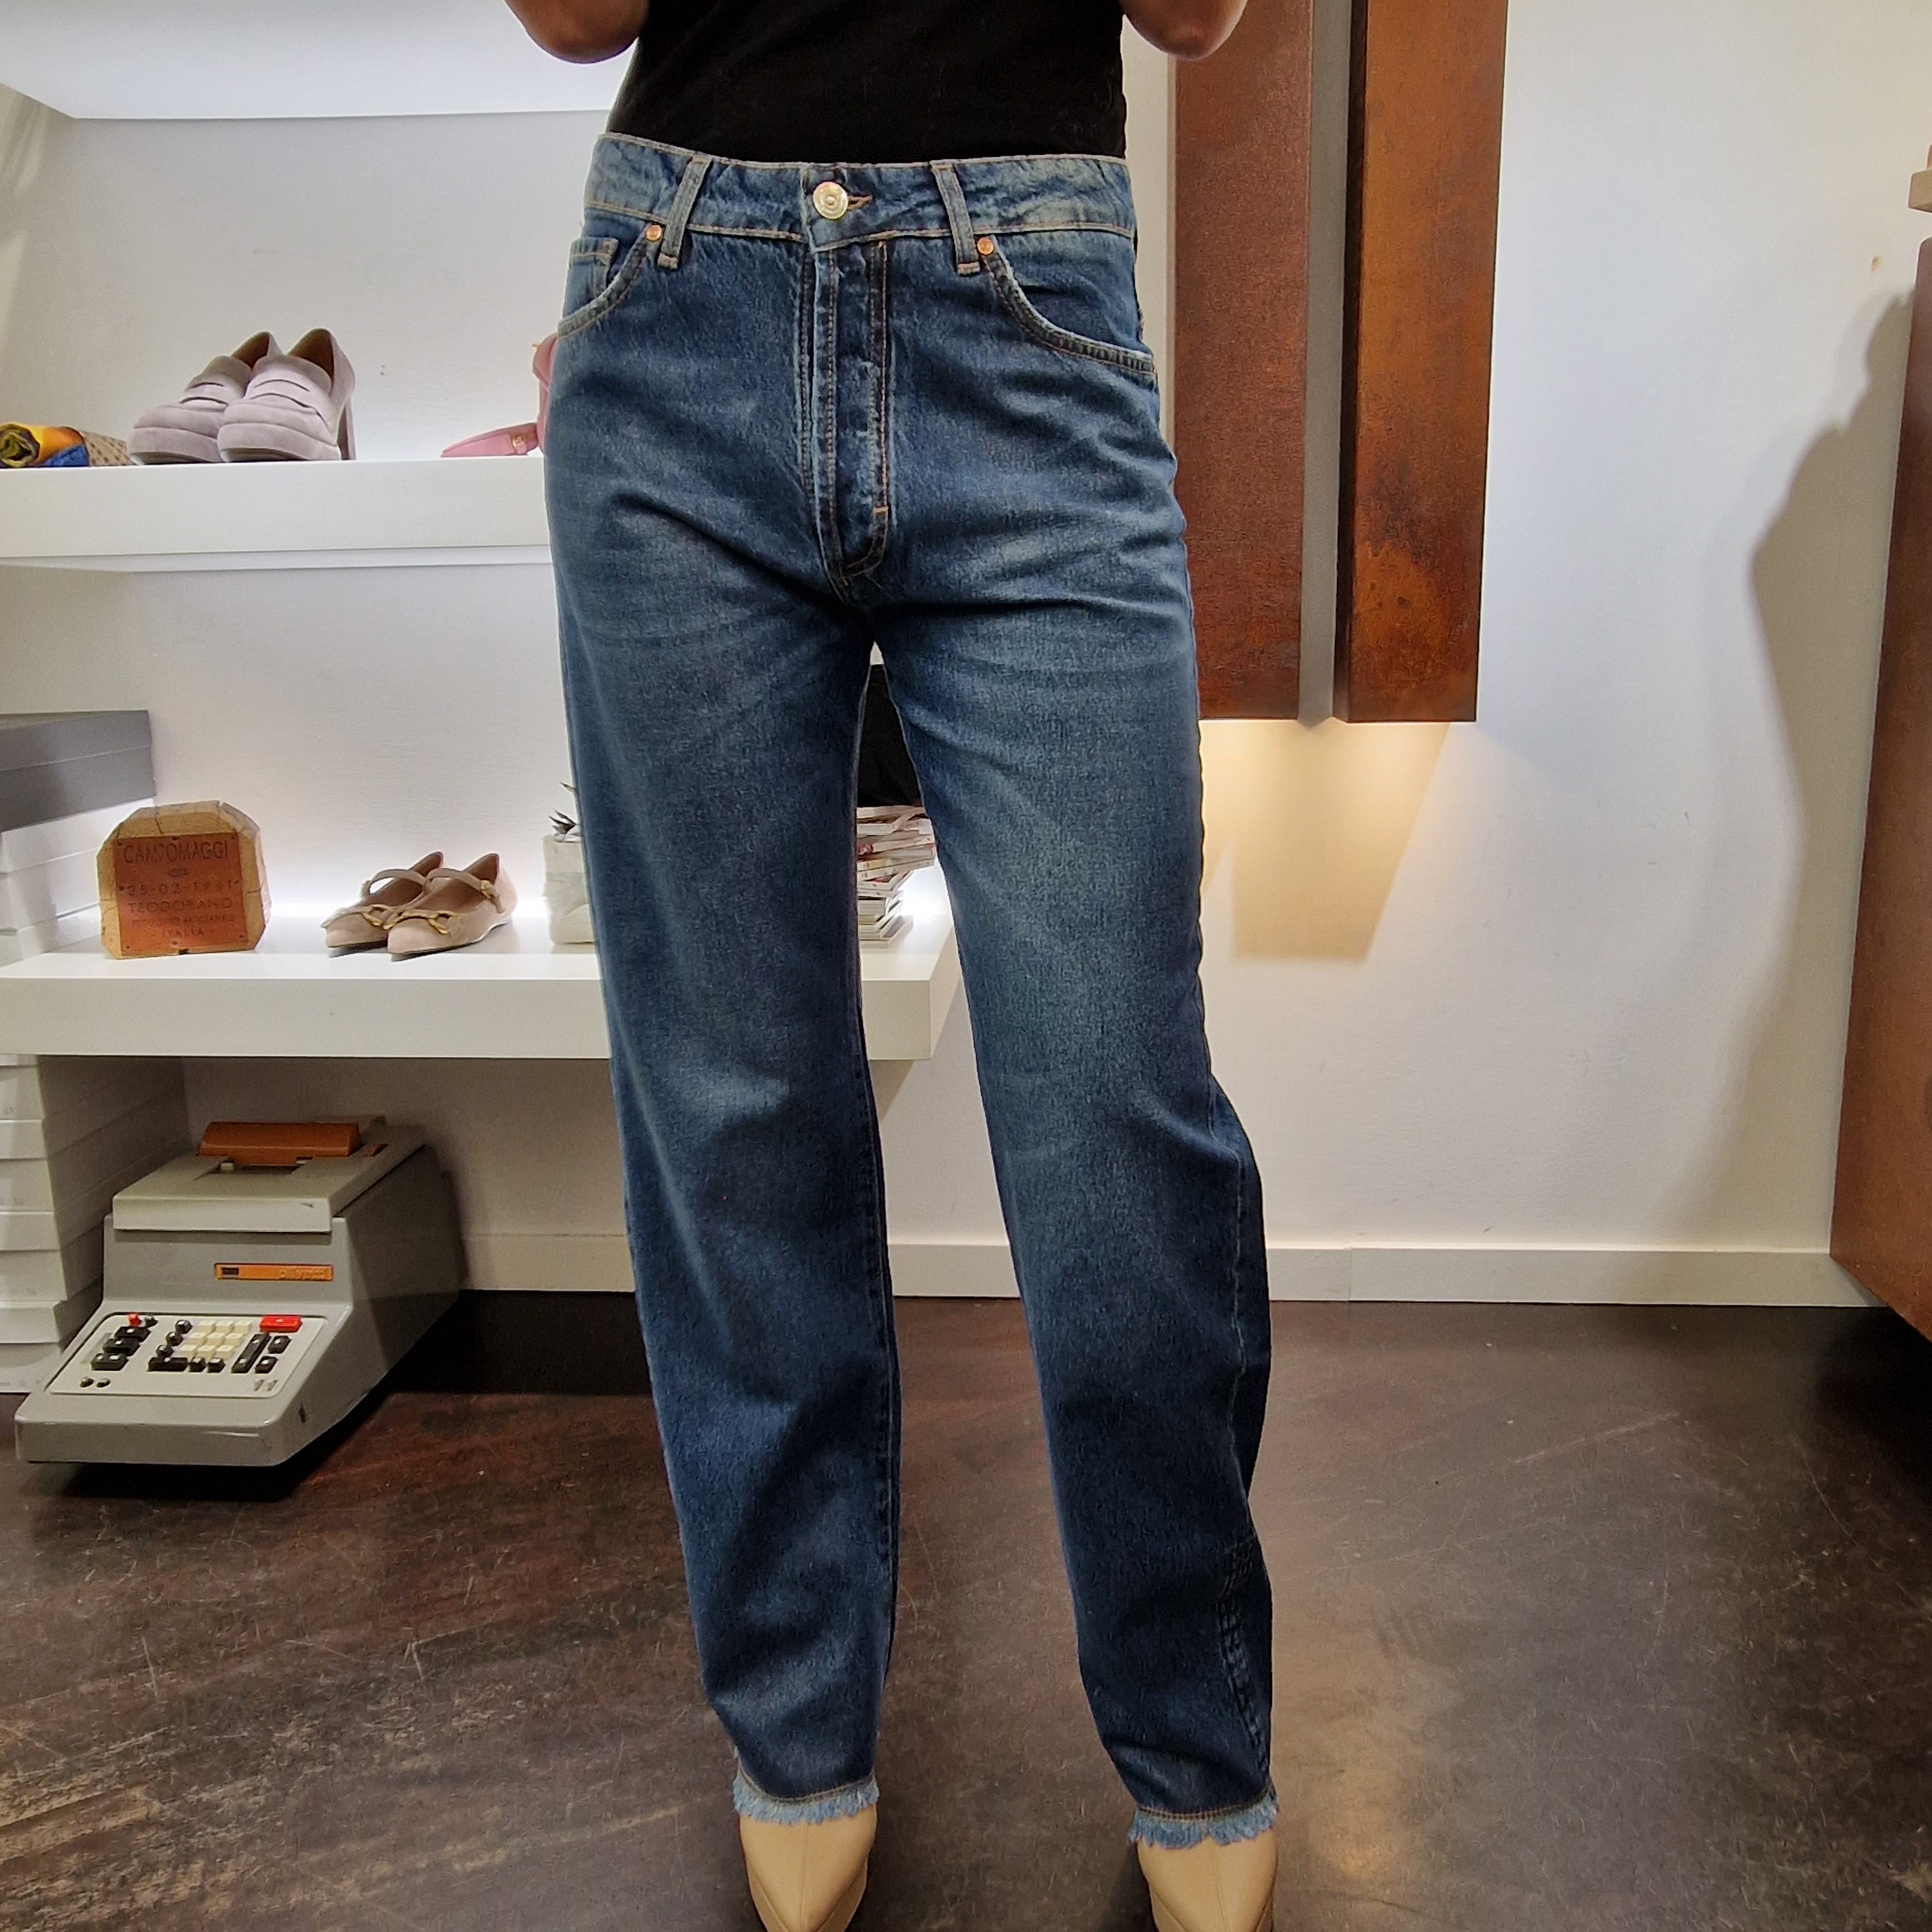 Pantalone jeans trattatamento con leggera lamina trasparente argento 008-p